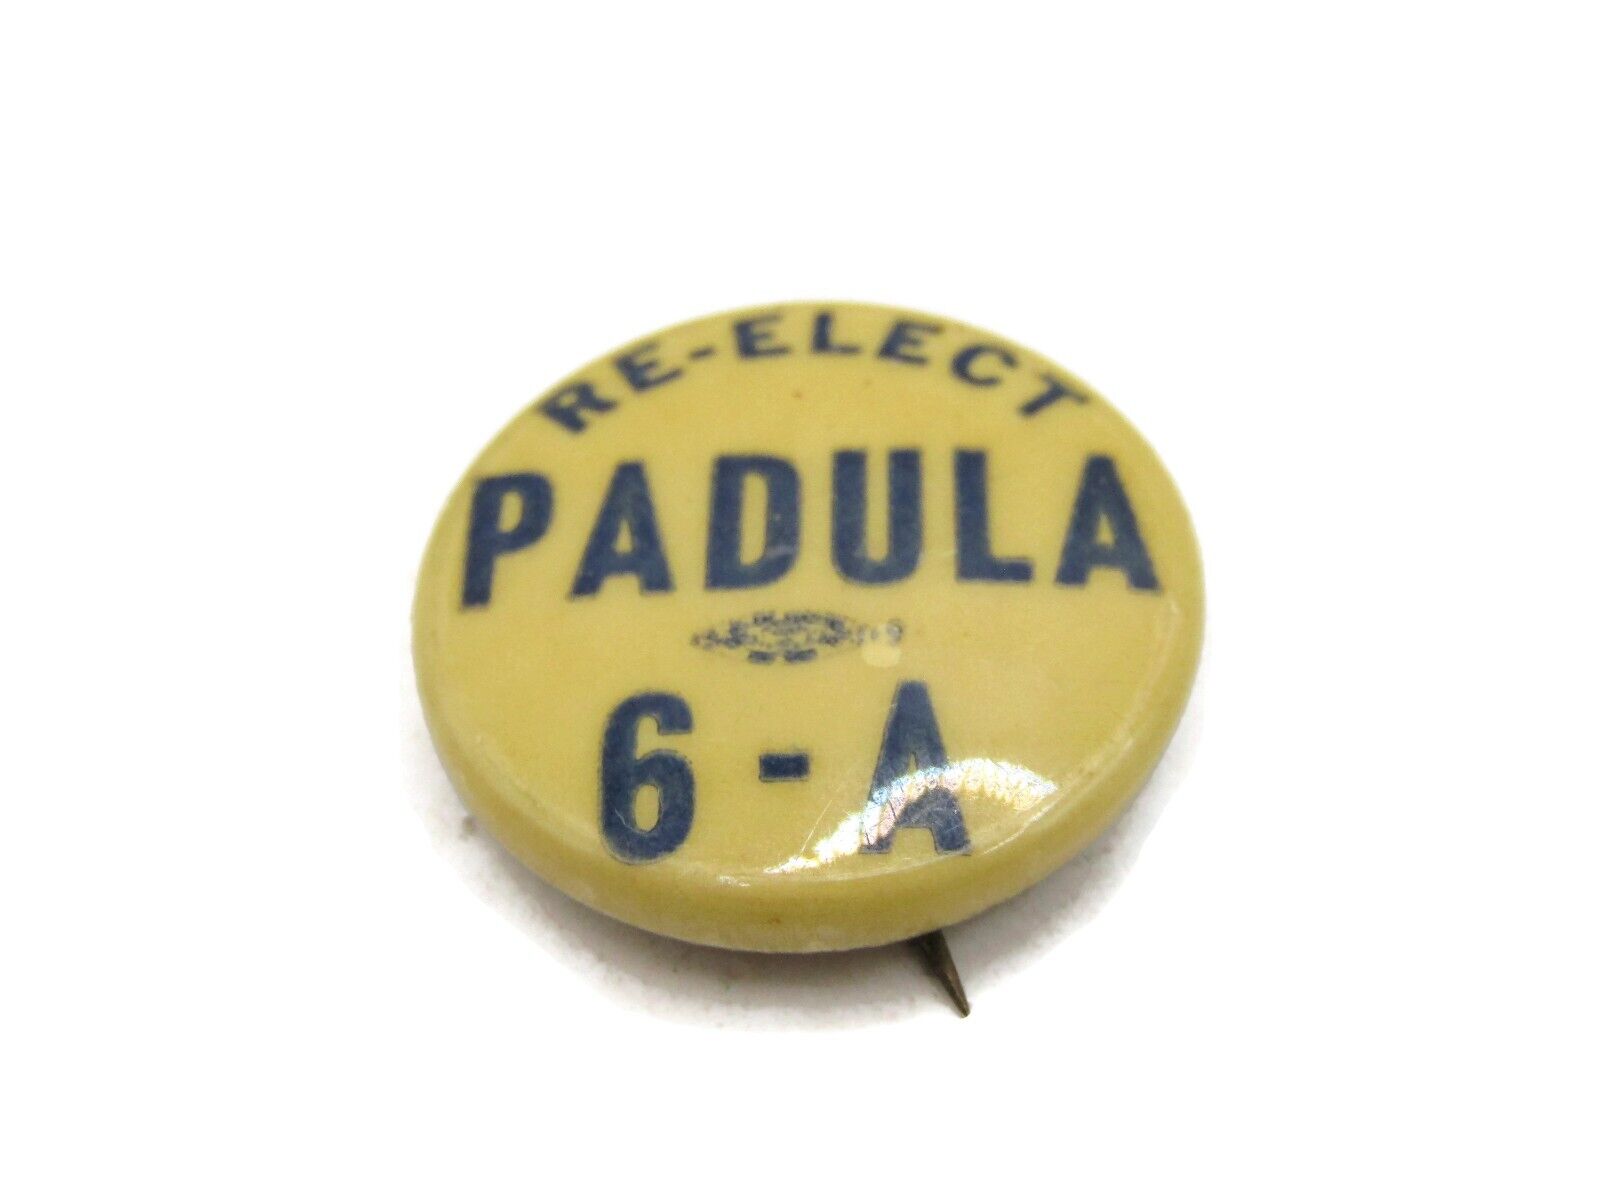 Re-Elect PADULA 6-A Political Pin Button Vintage